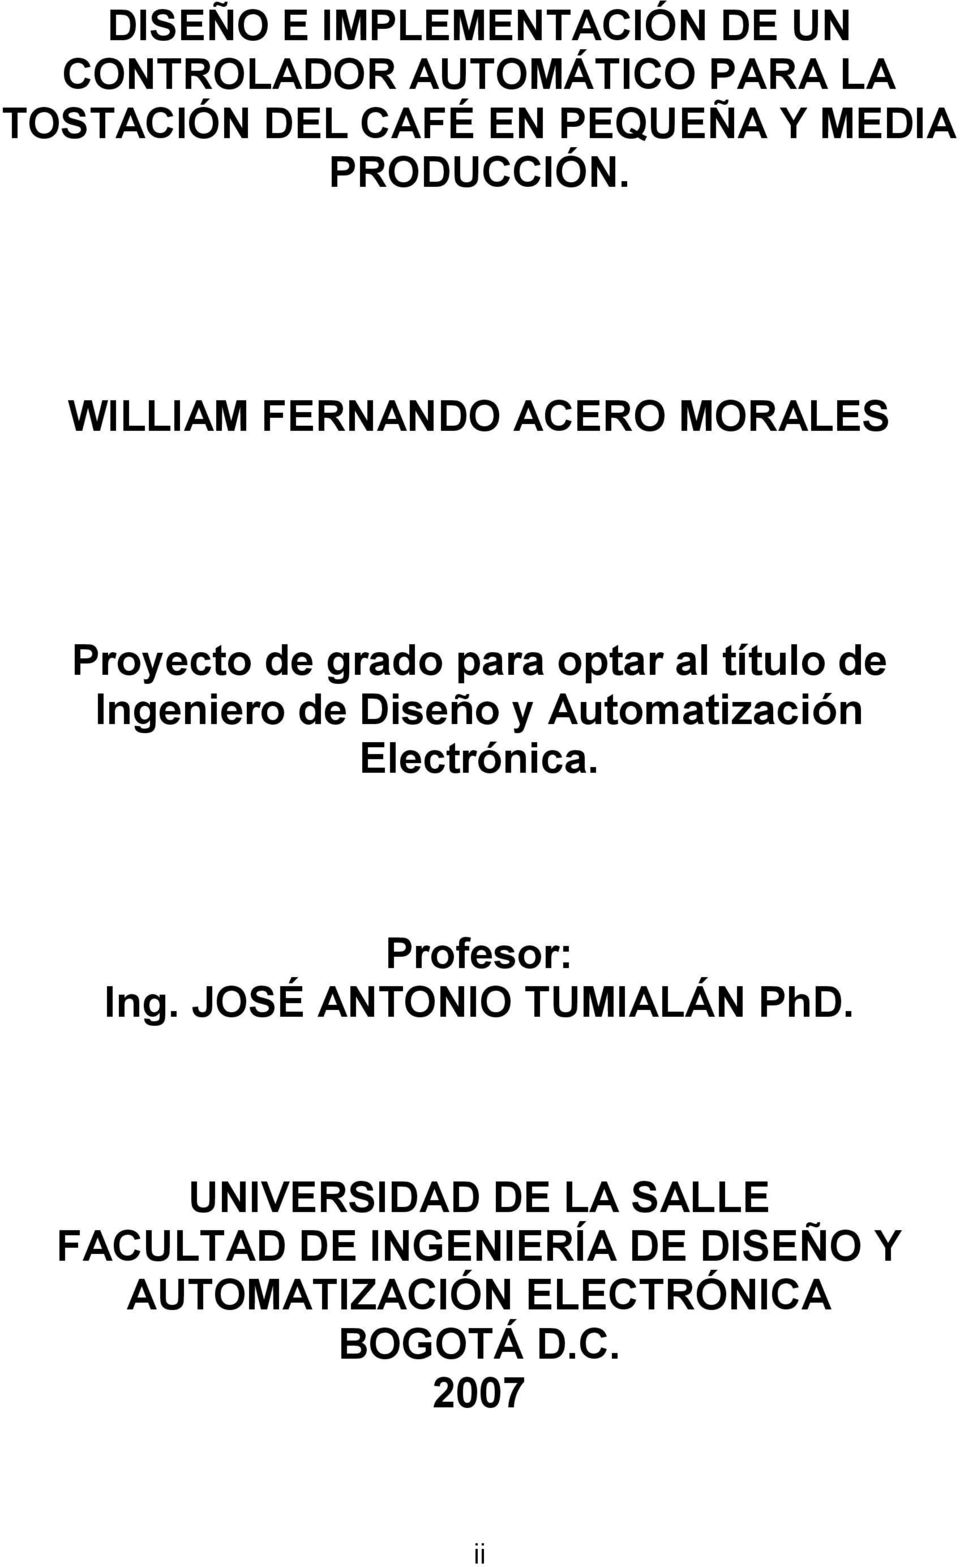 WILLIAM FERNANDO ACERO MORALES Proyecto de grado para optar al título de Ingeniero de Diseño y